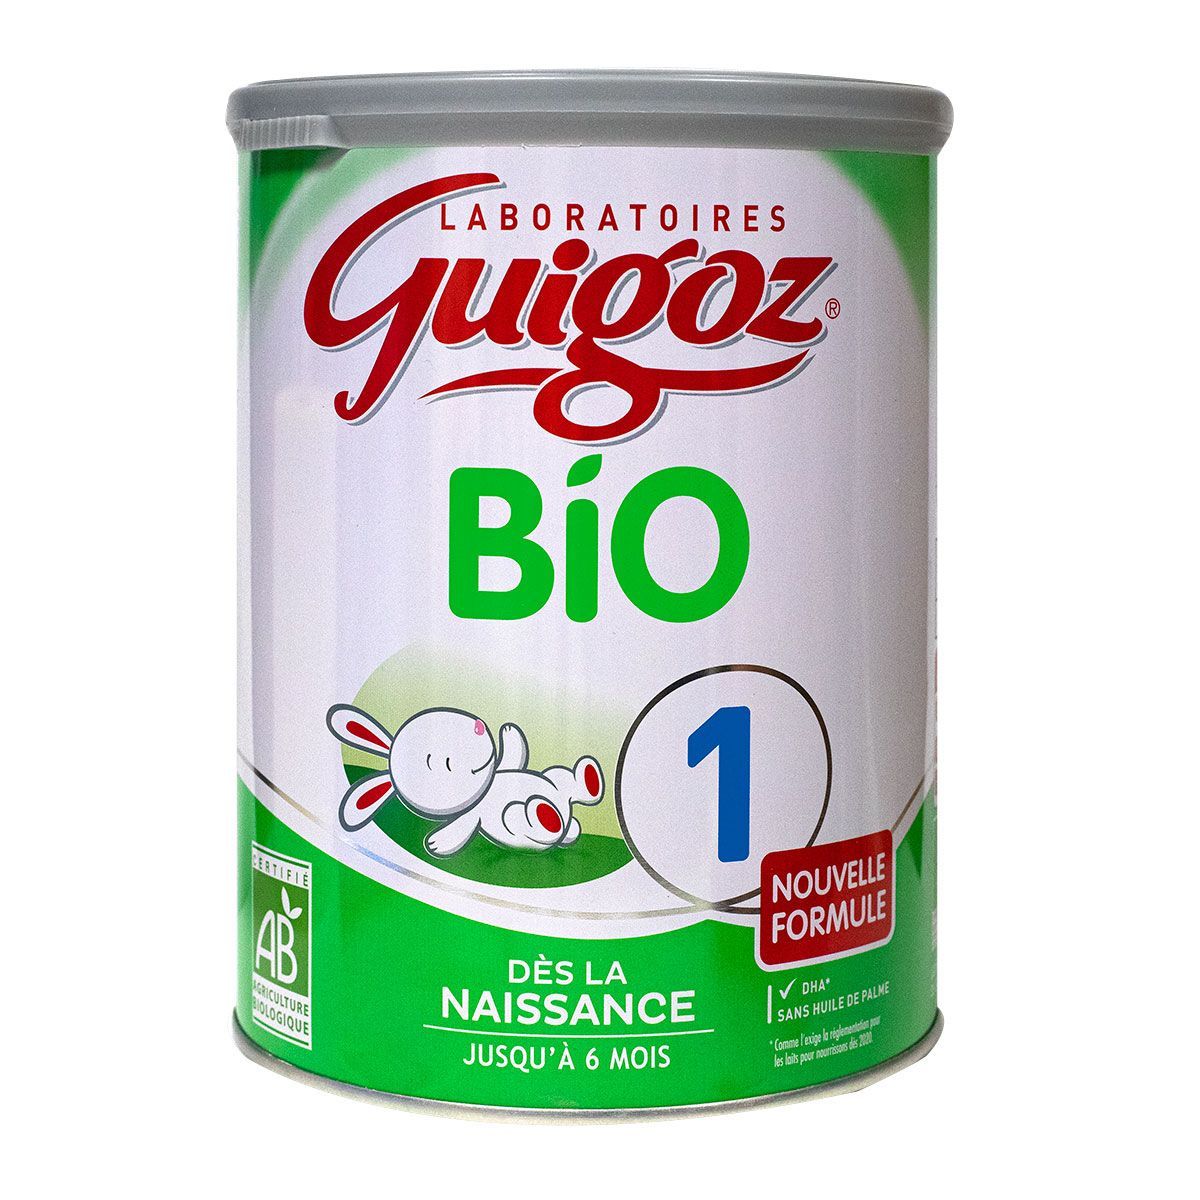 Le lait croissance 1er âge bio Guigoz est un aliment lacté en poudre pour  nourrissons.